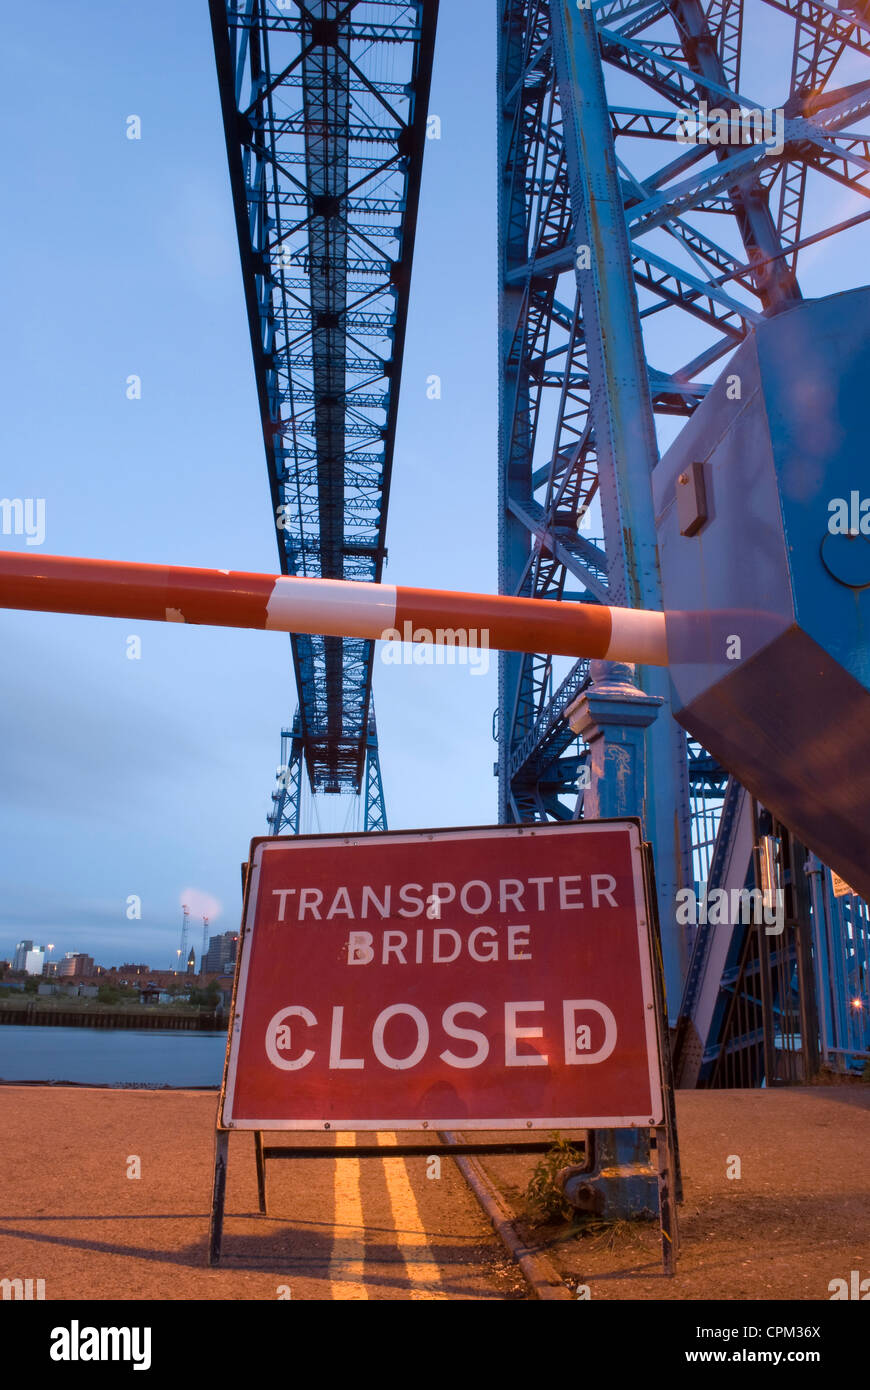 Transporter Bridge à Middlesbrough avec closed sign Banque D'Images